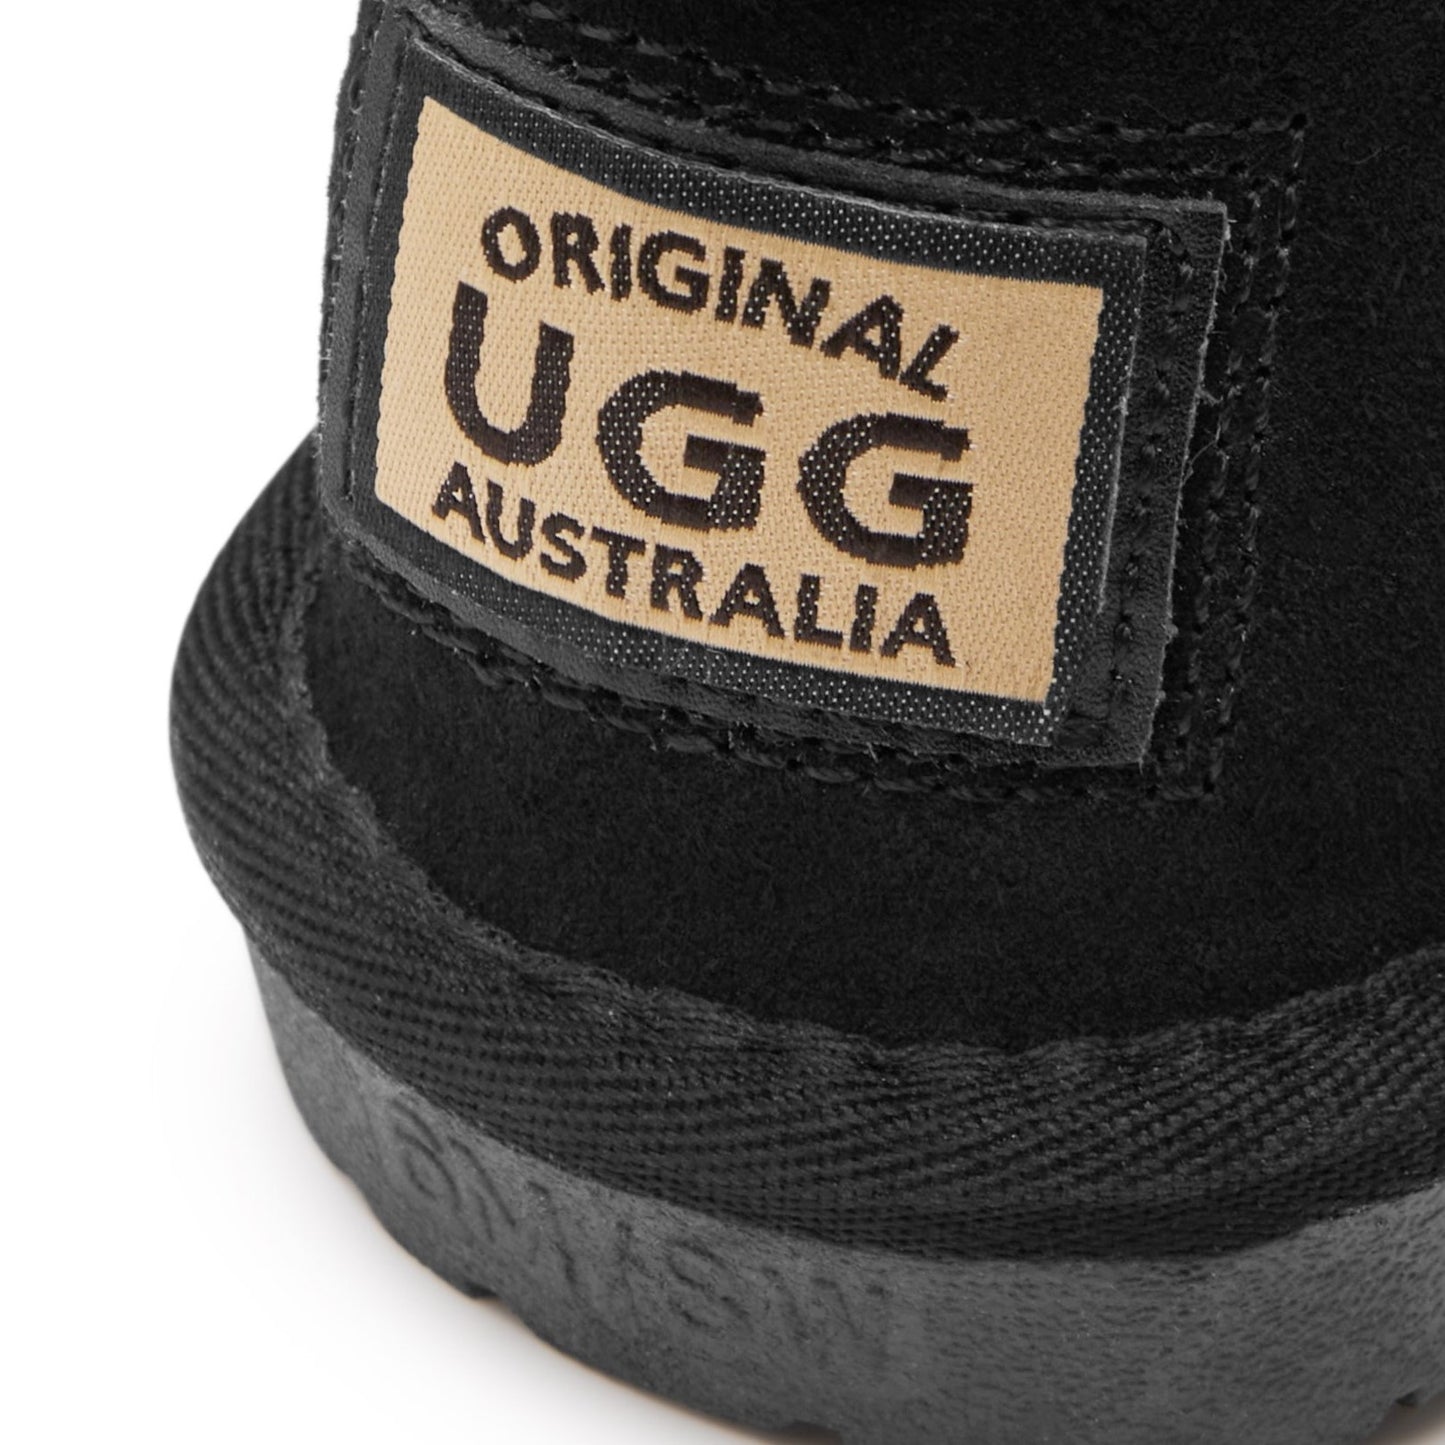 Originals Ugg Australia Long Logo Boots Black